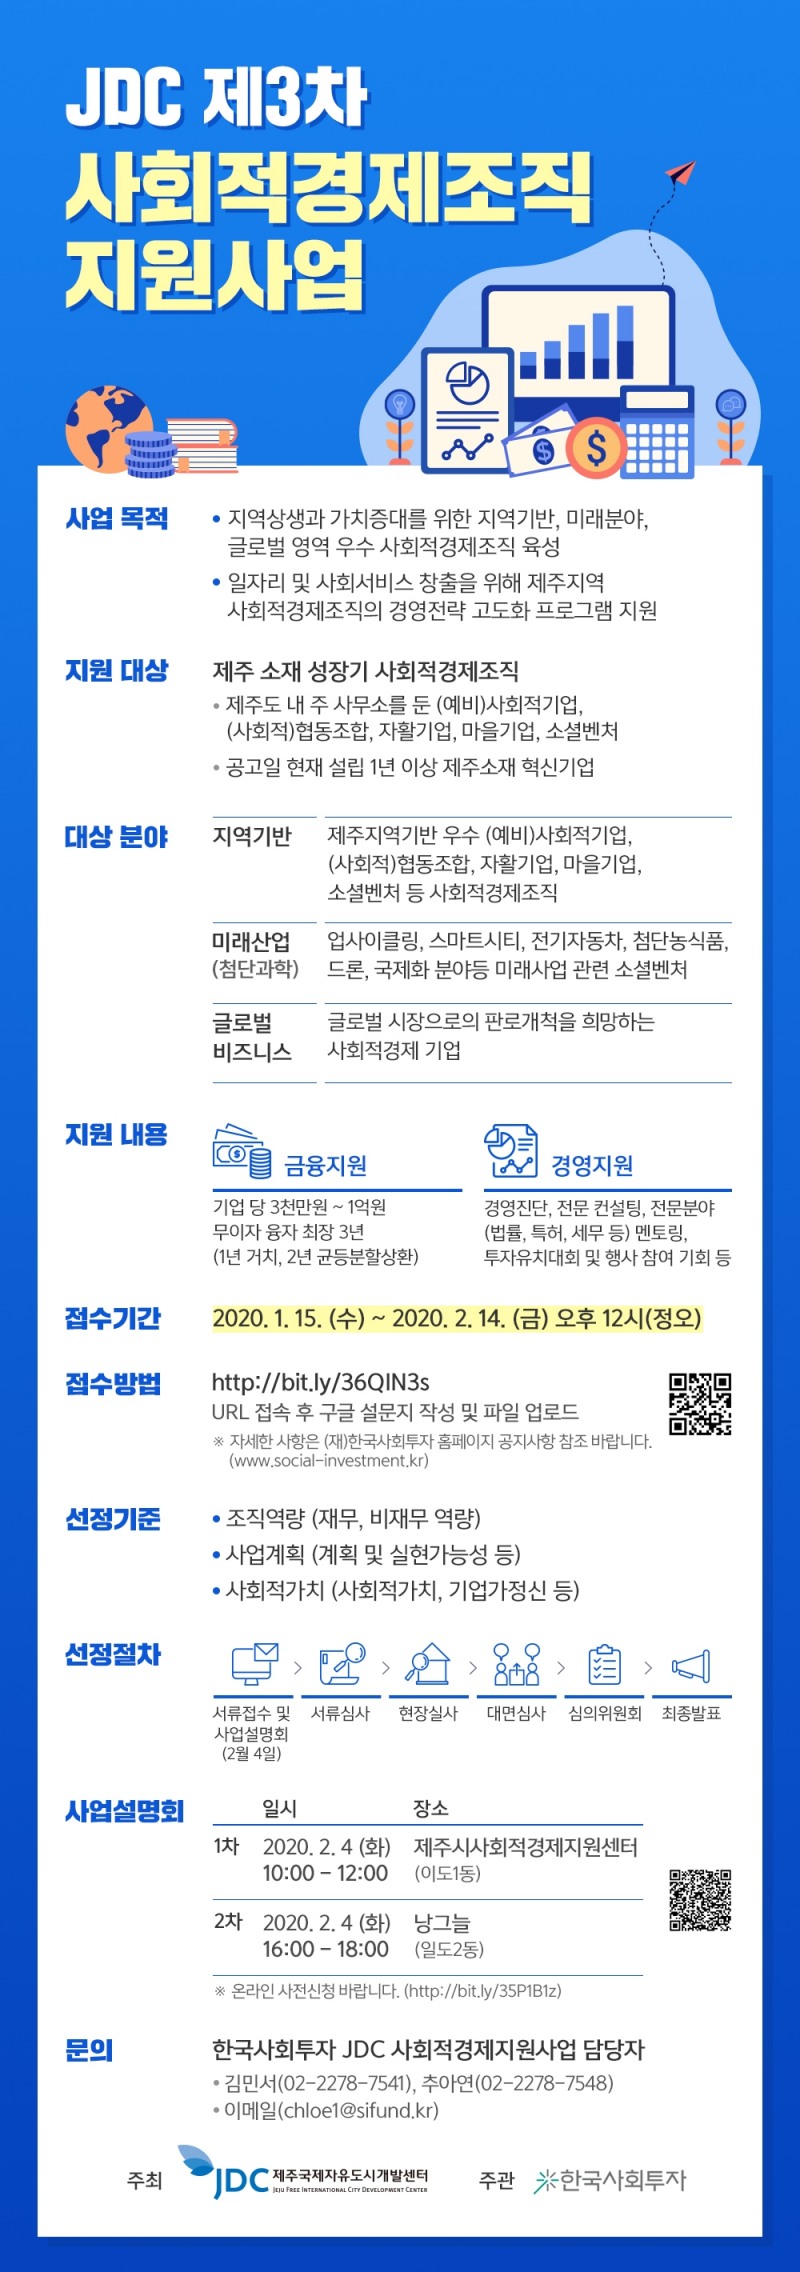 한국사회투자-JDC, 임팩트금융 CSR 사업 본격화